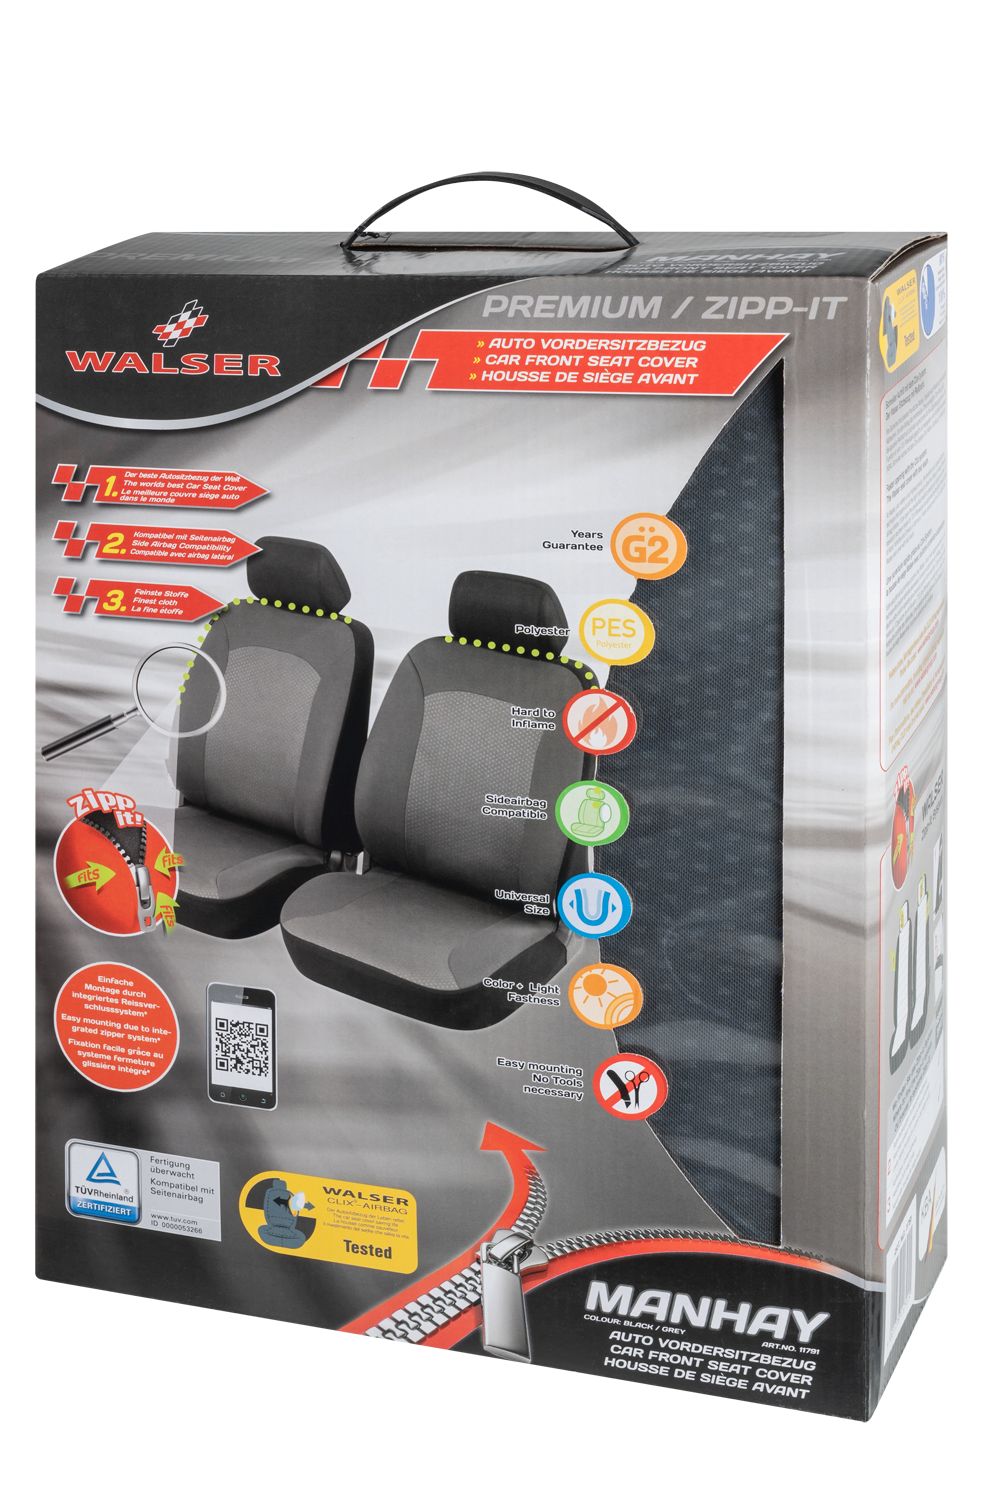 Auto stoelbeschermer Manhay met Zipper ZIPP-IT Autostoelhoes, 2 stoelbeschermer voor voorstoel grijs